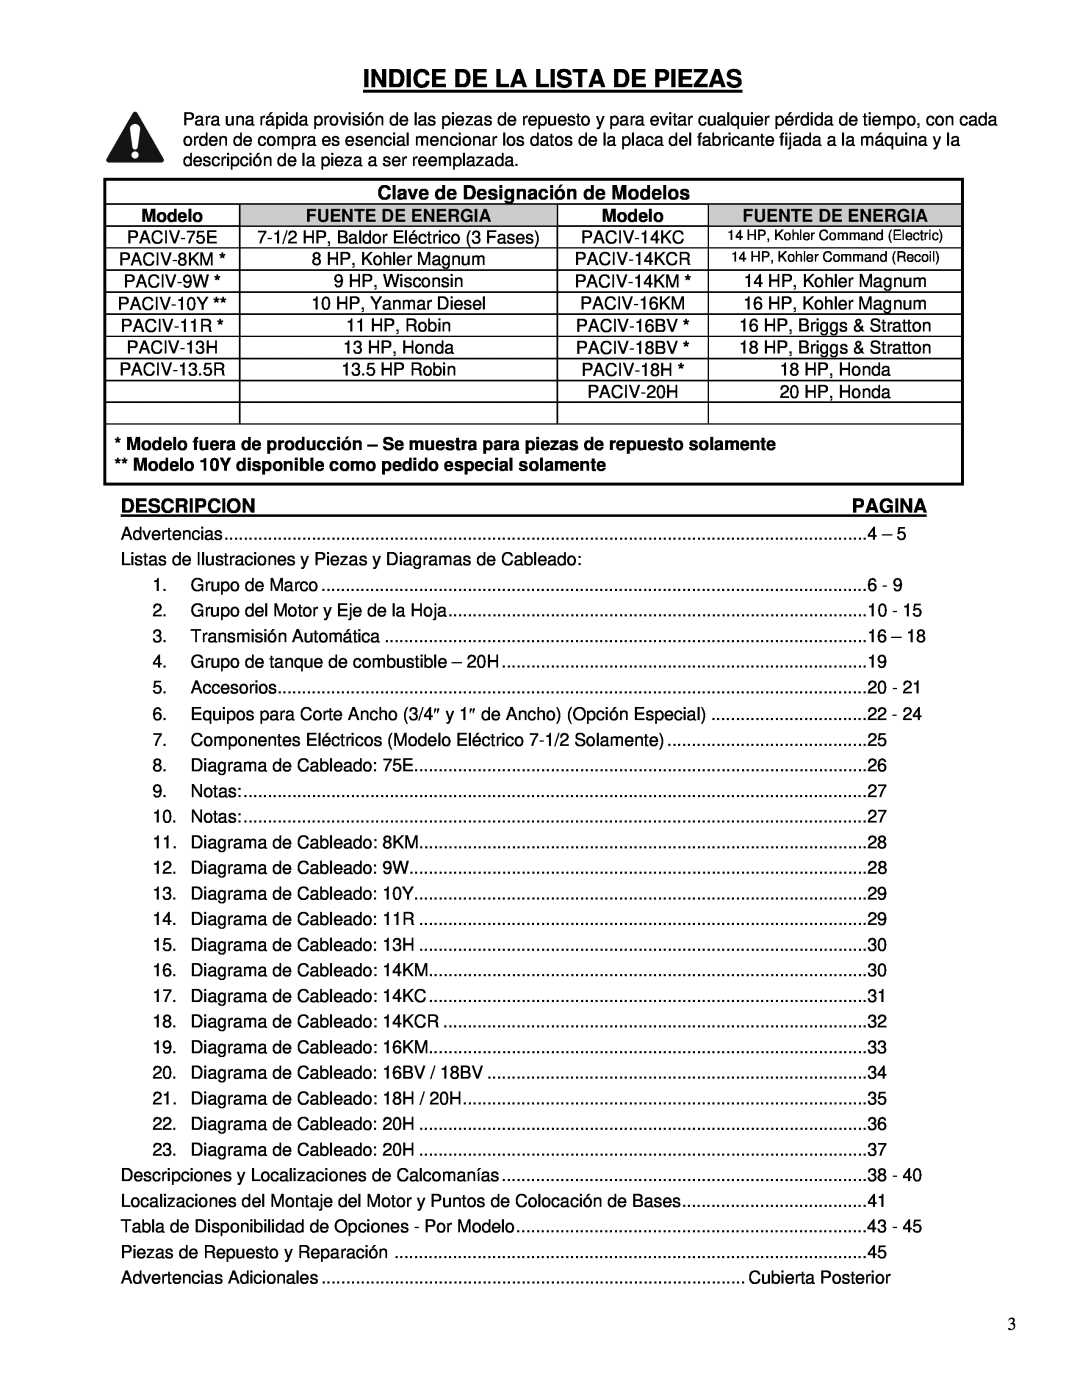 Husqvarna PAC IV-18H, PAC IV-8KM Indice De La Lista De Piezas, Clave de Designación de Modelos, Pagina, Descripcion 